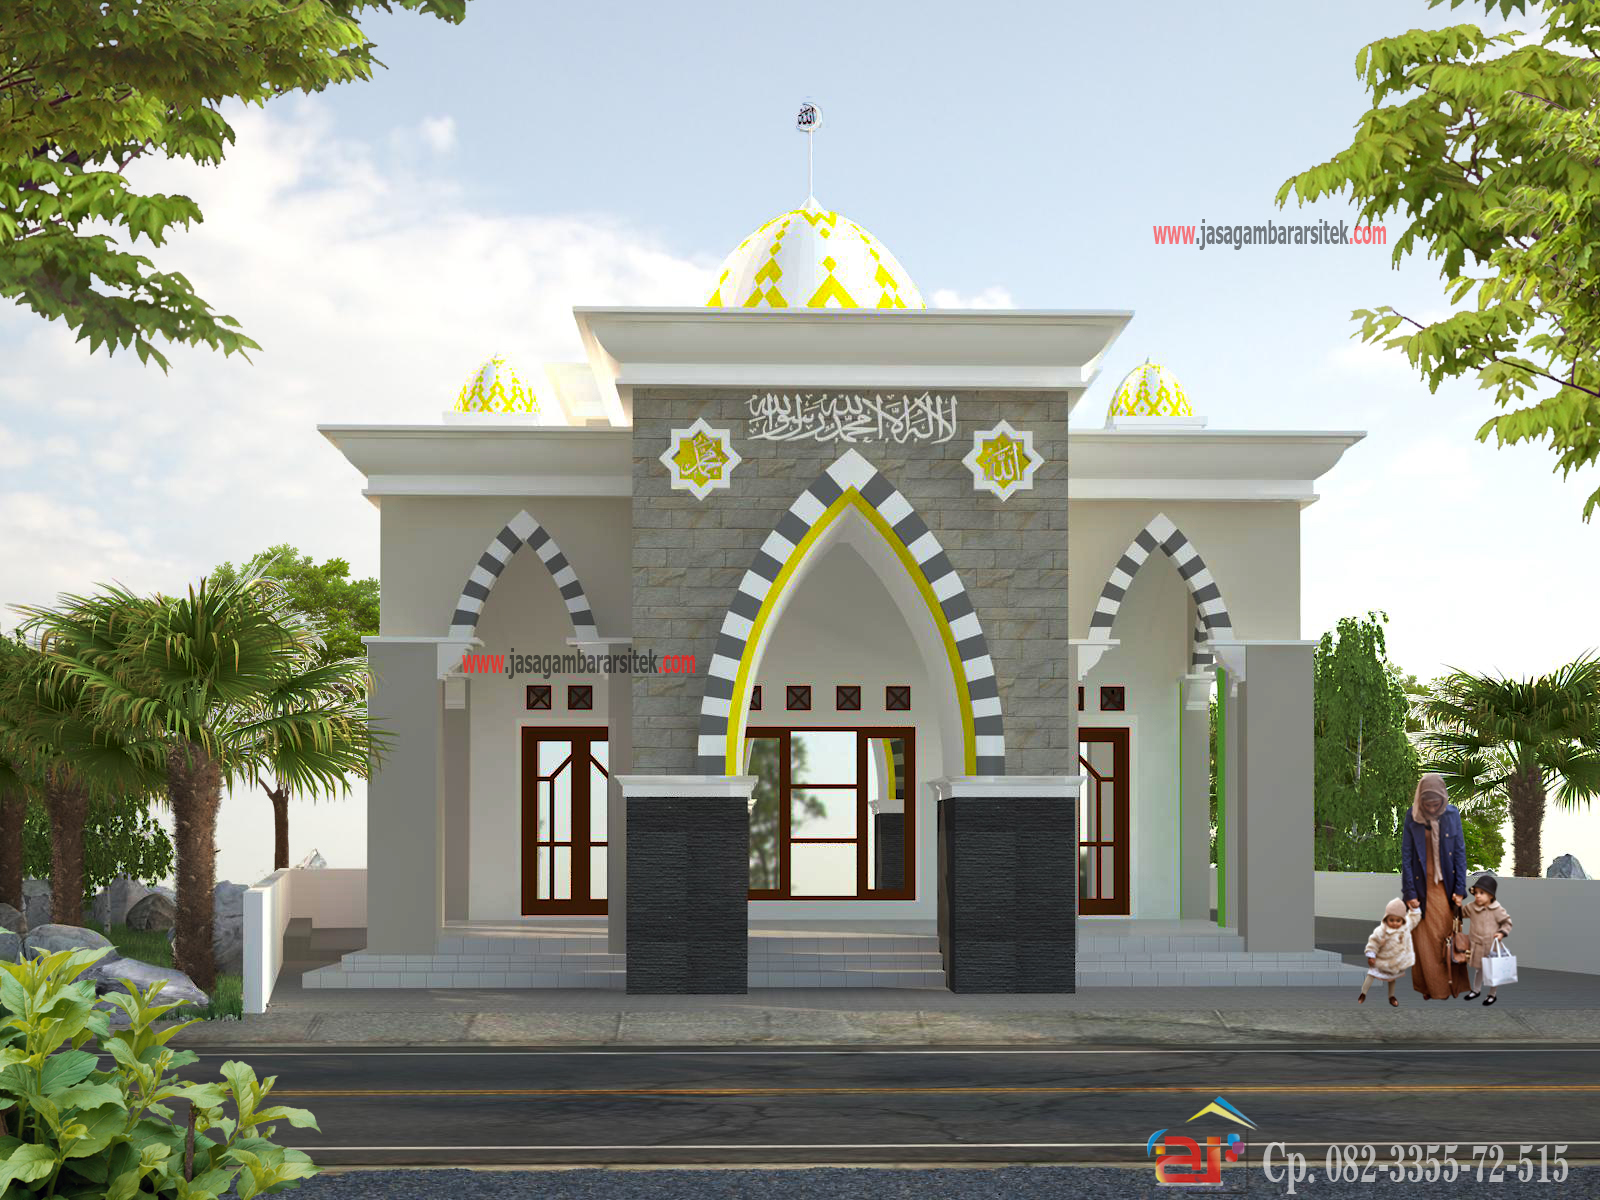  Masjid  Minimalis  2022 Layanan Jasa Gambar Arsitek